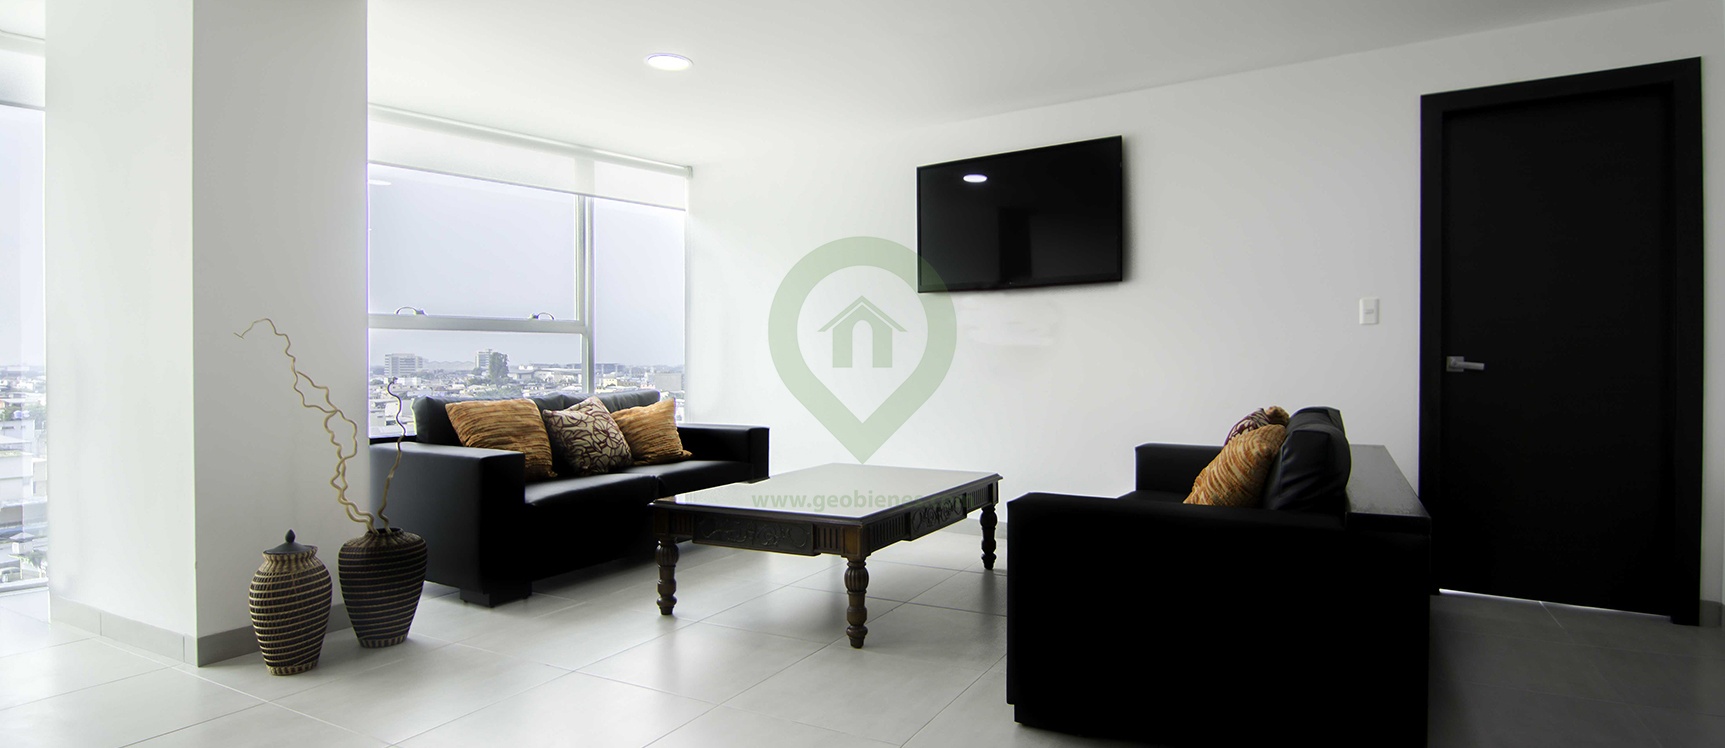 GeoBienes - Departamento en alquiler en Edificio QUO norte de Guayaquil - Plusvalia Guayaquil Casas de venta y alquiler Inmobiliaria Ecuador